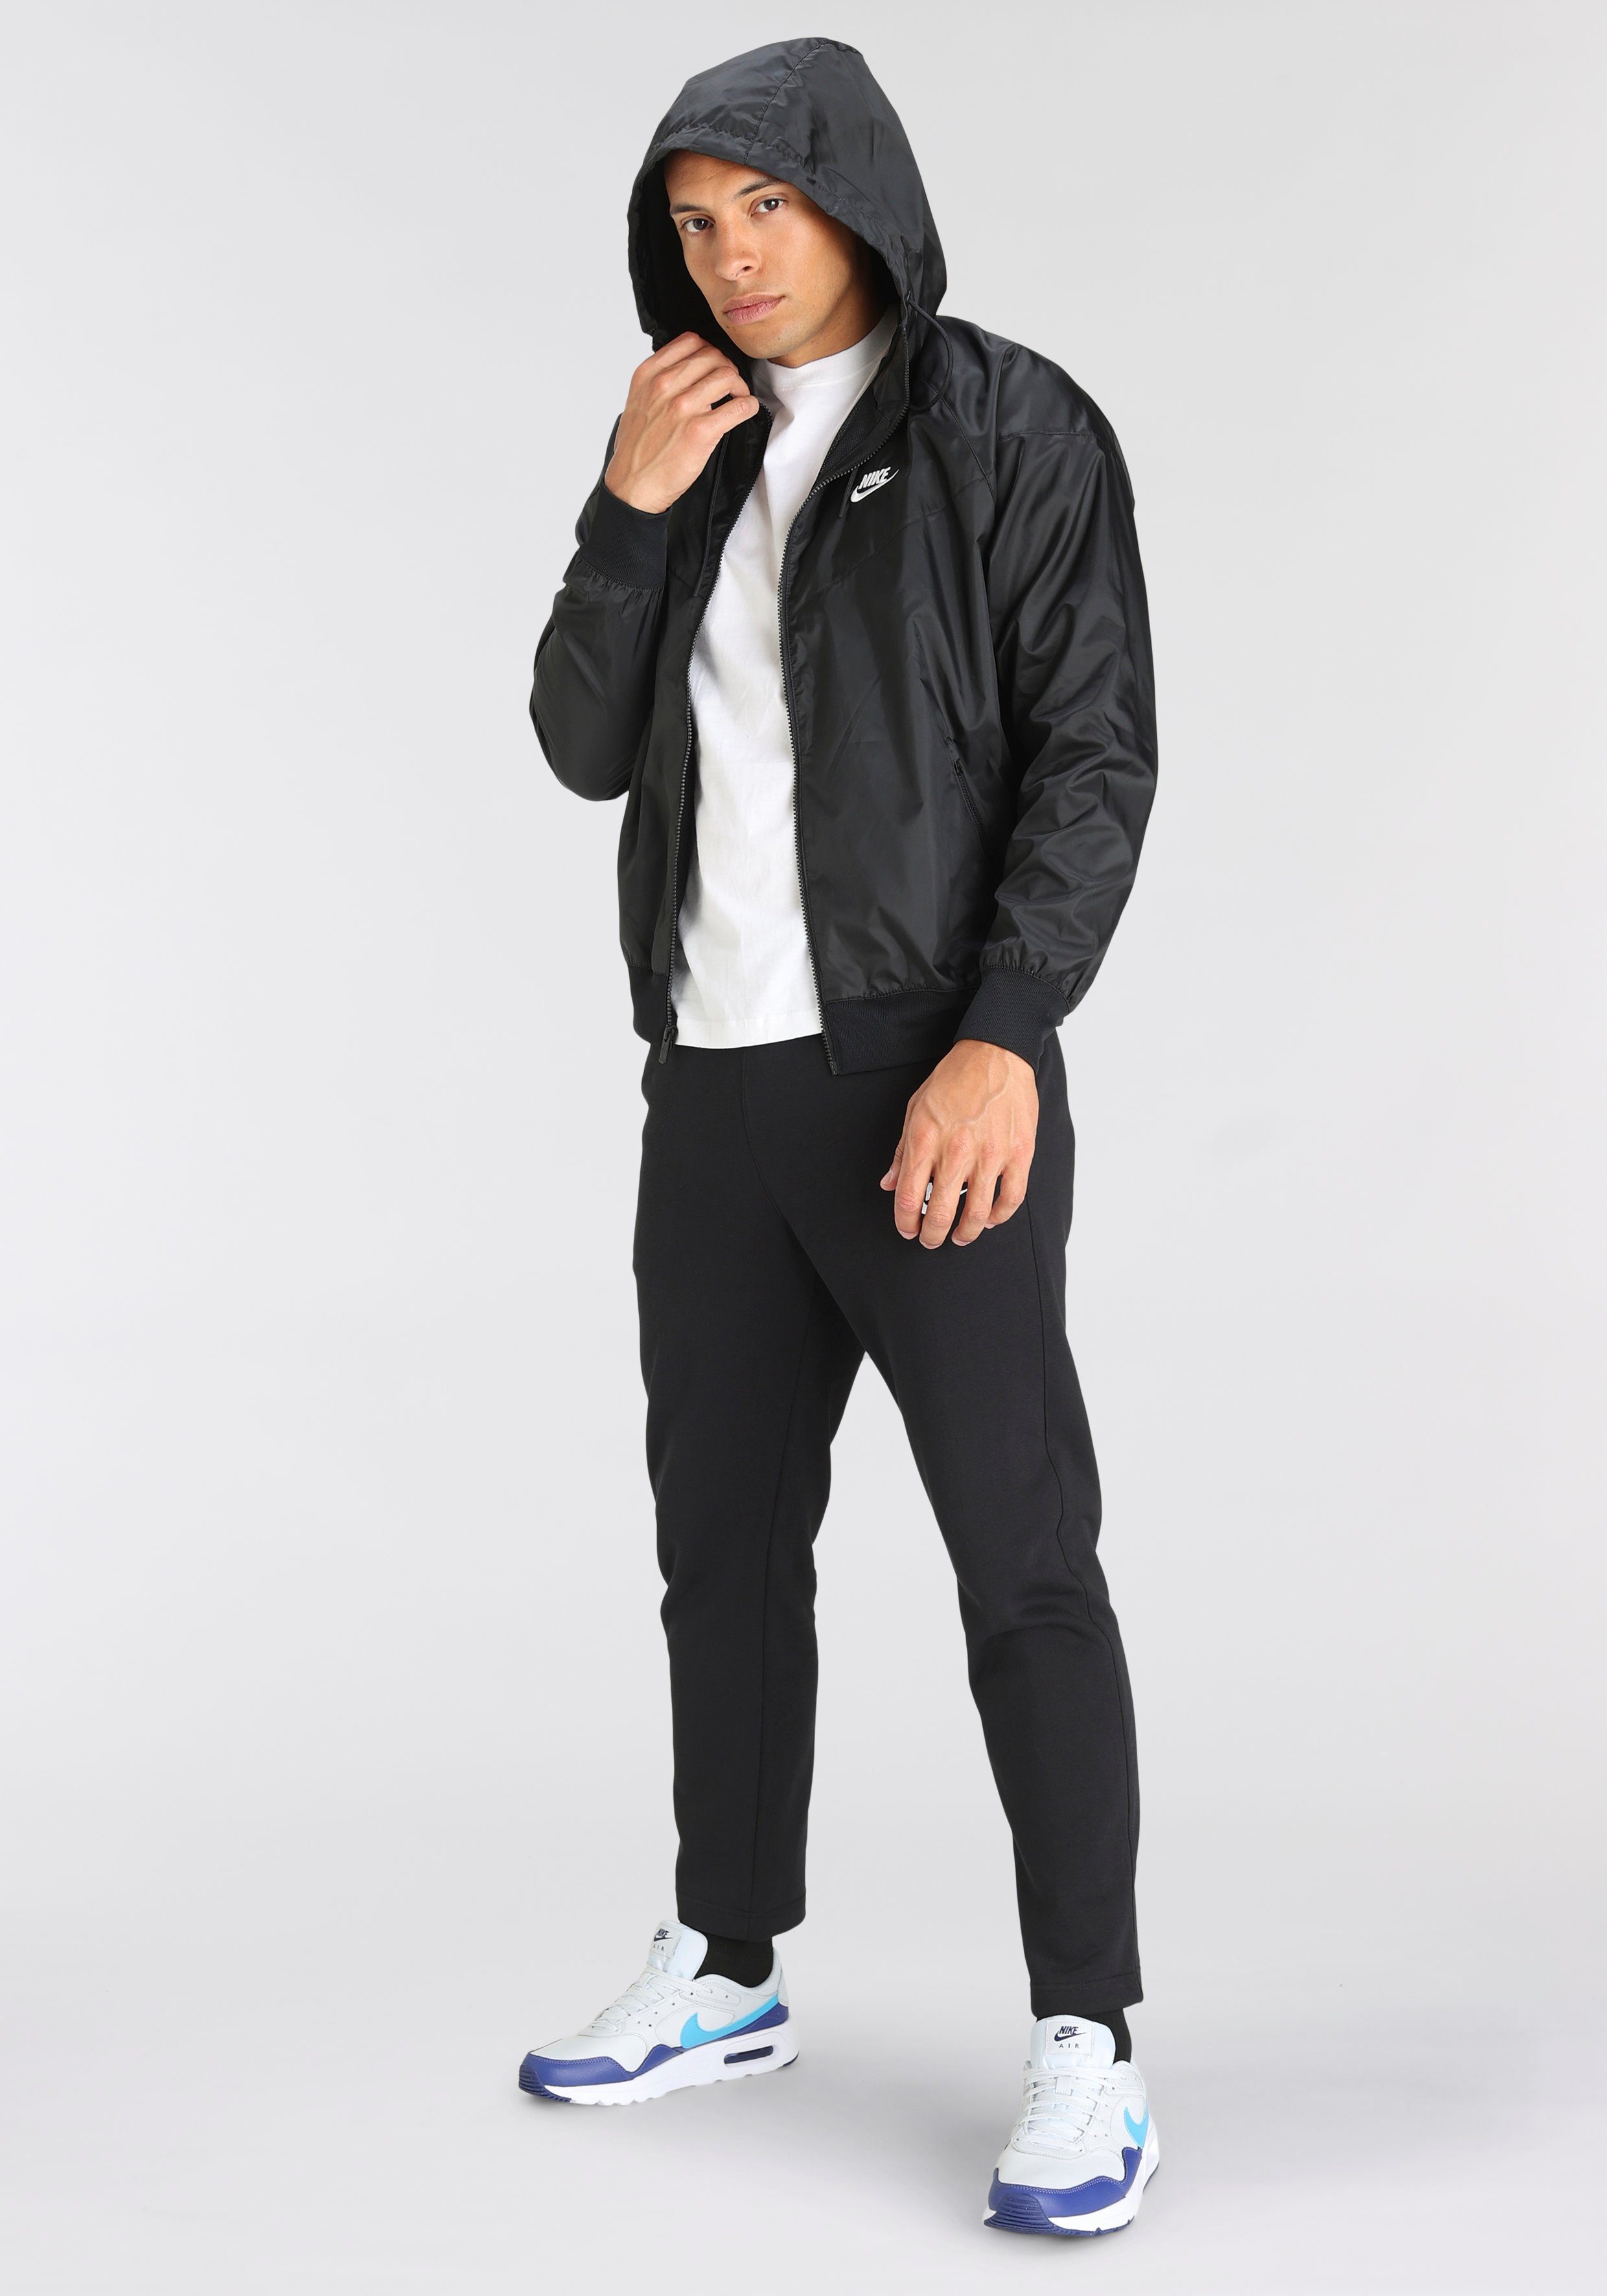 Jacket Hooded schwarz Men's Windbreaker Nike Sportswear Windrunner